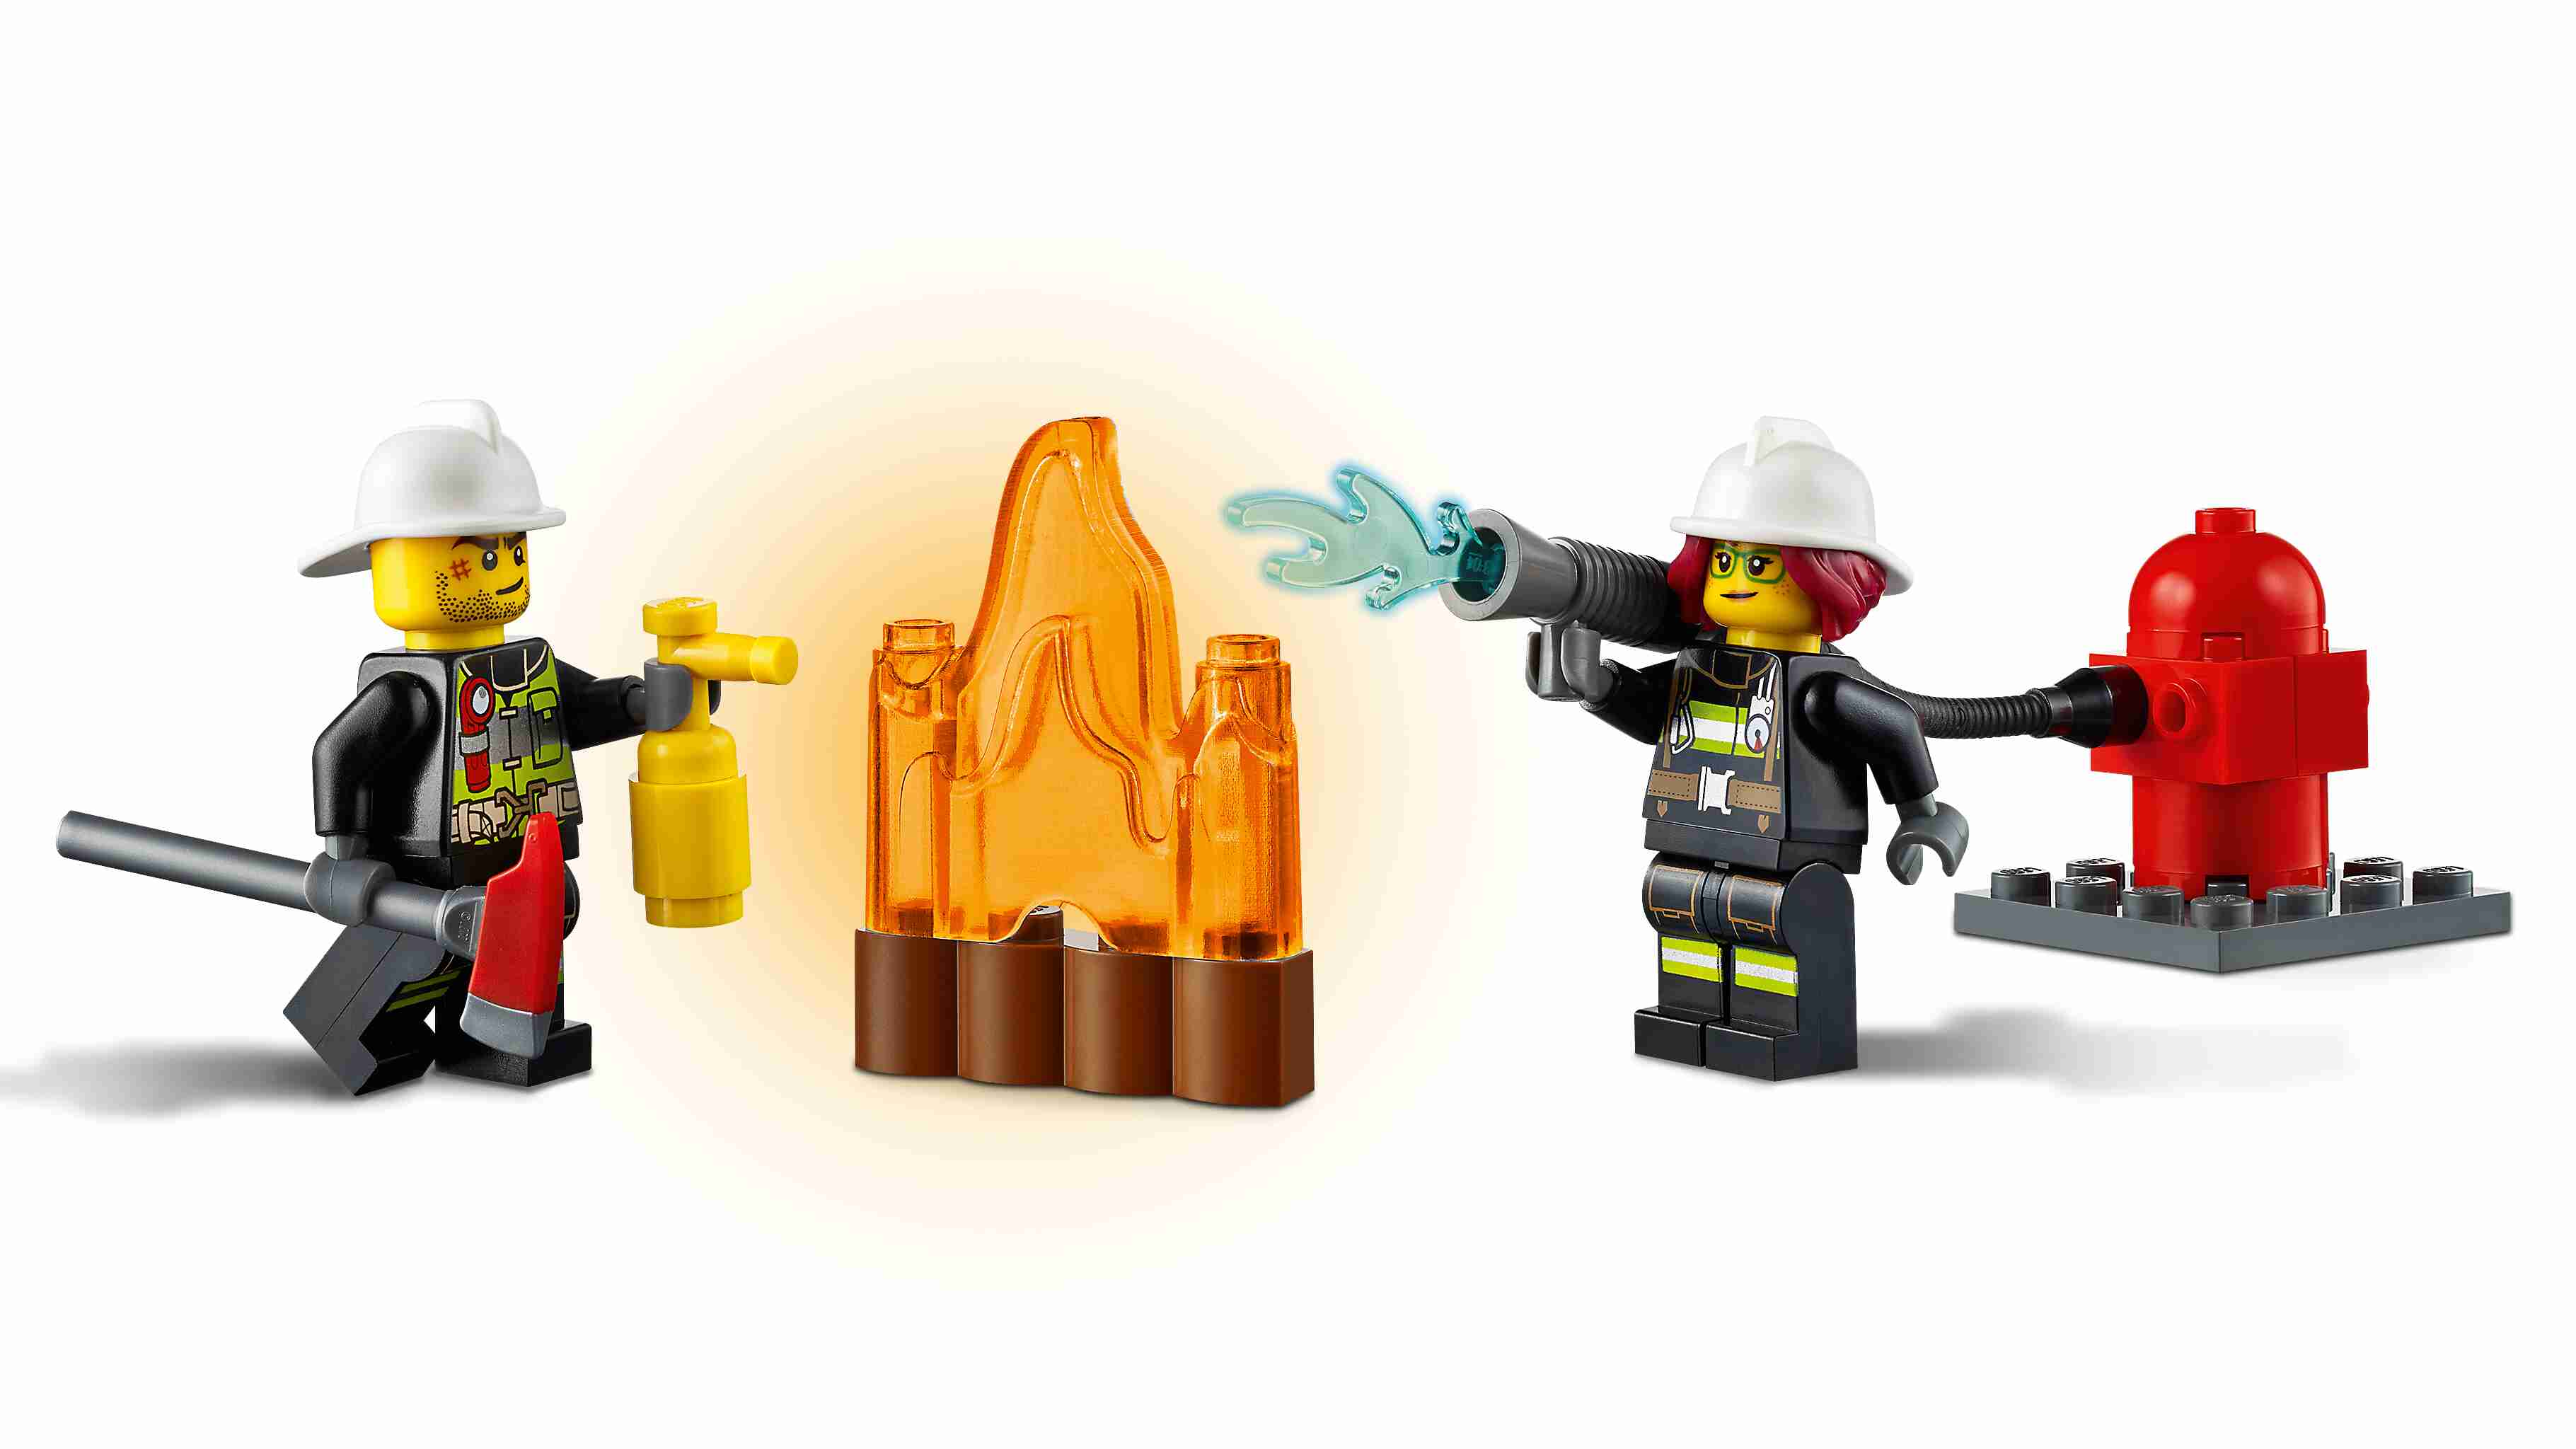 LEGO 60280 City Feuerwehrauto mit Feuerwehrmann Minifigur